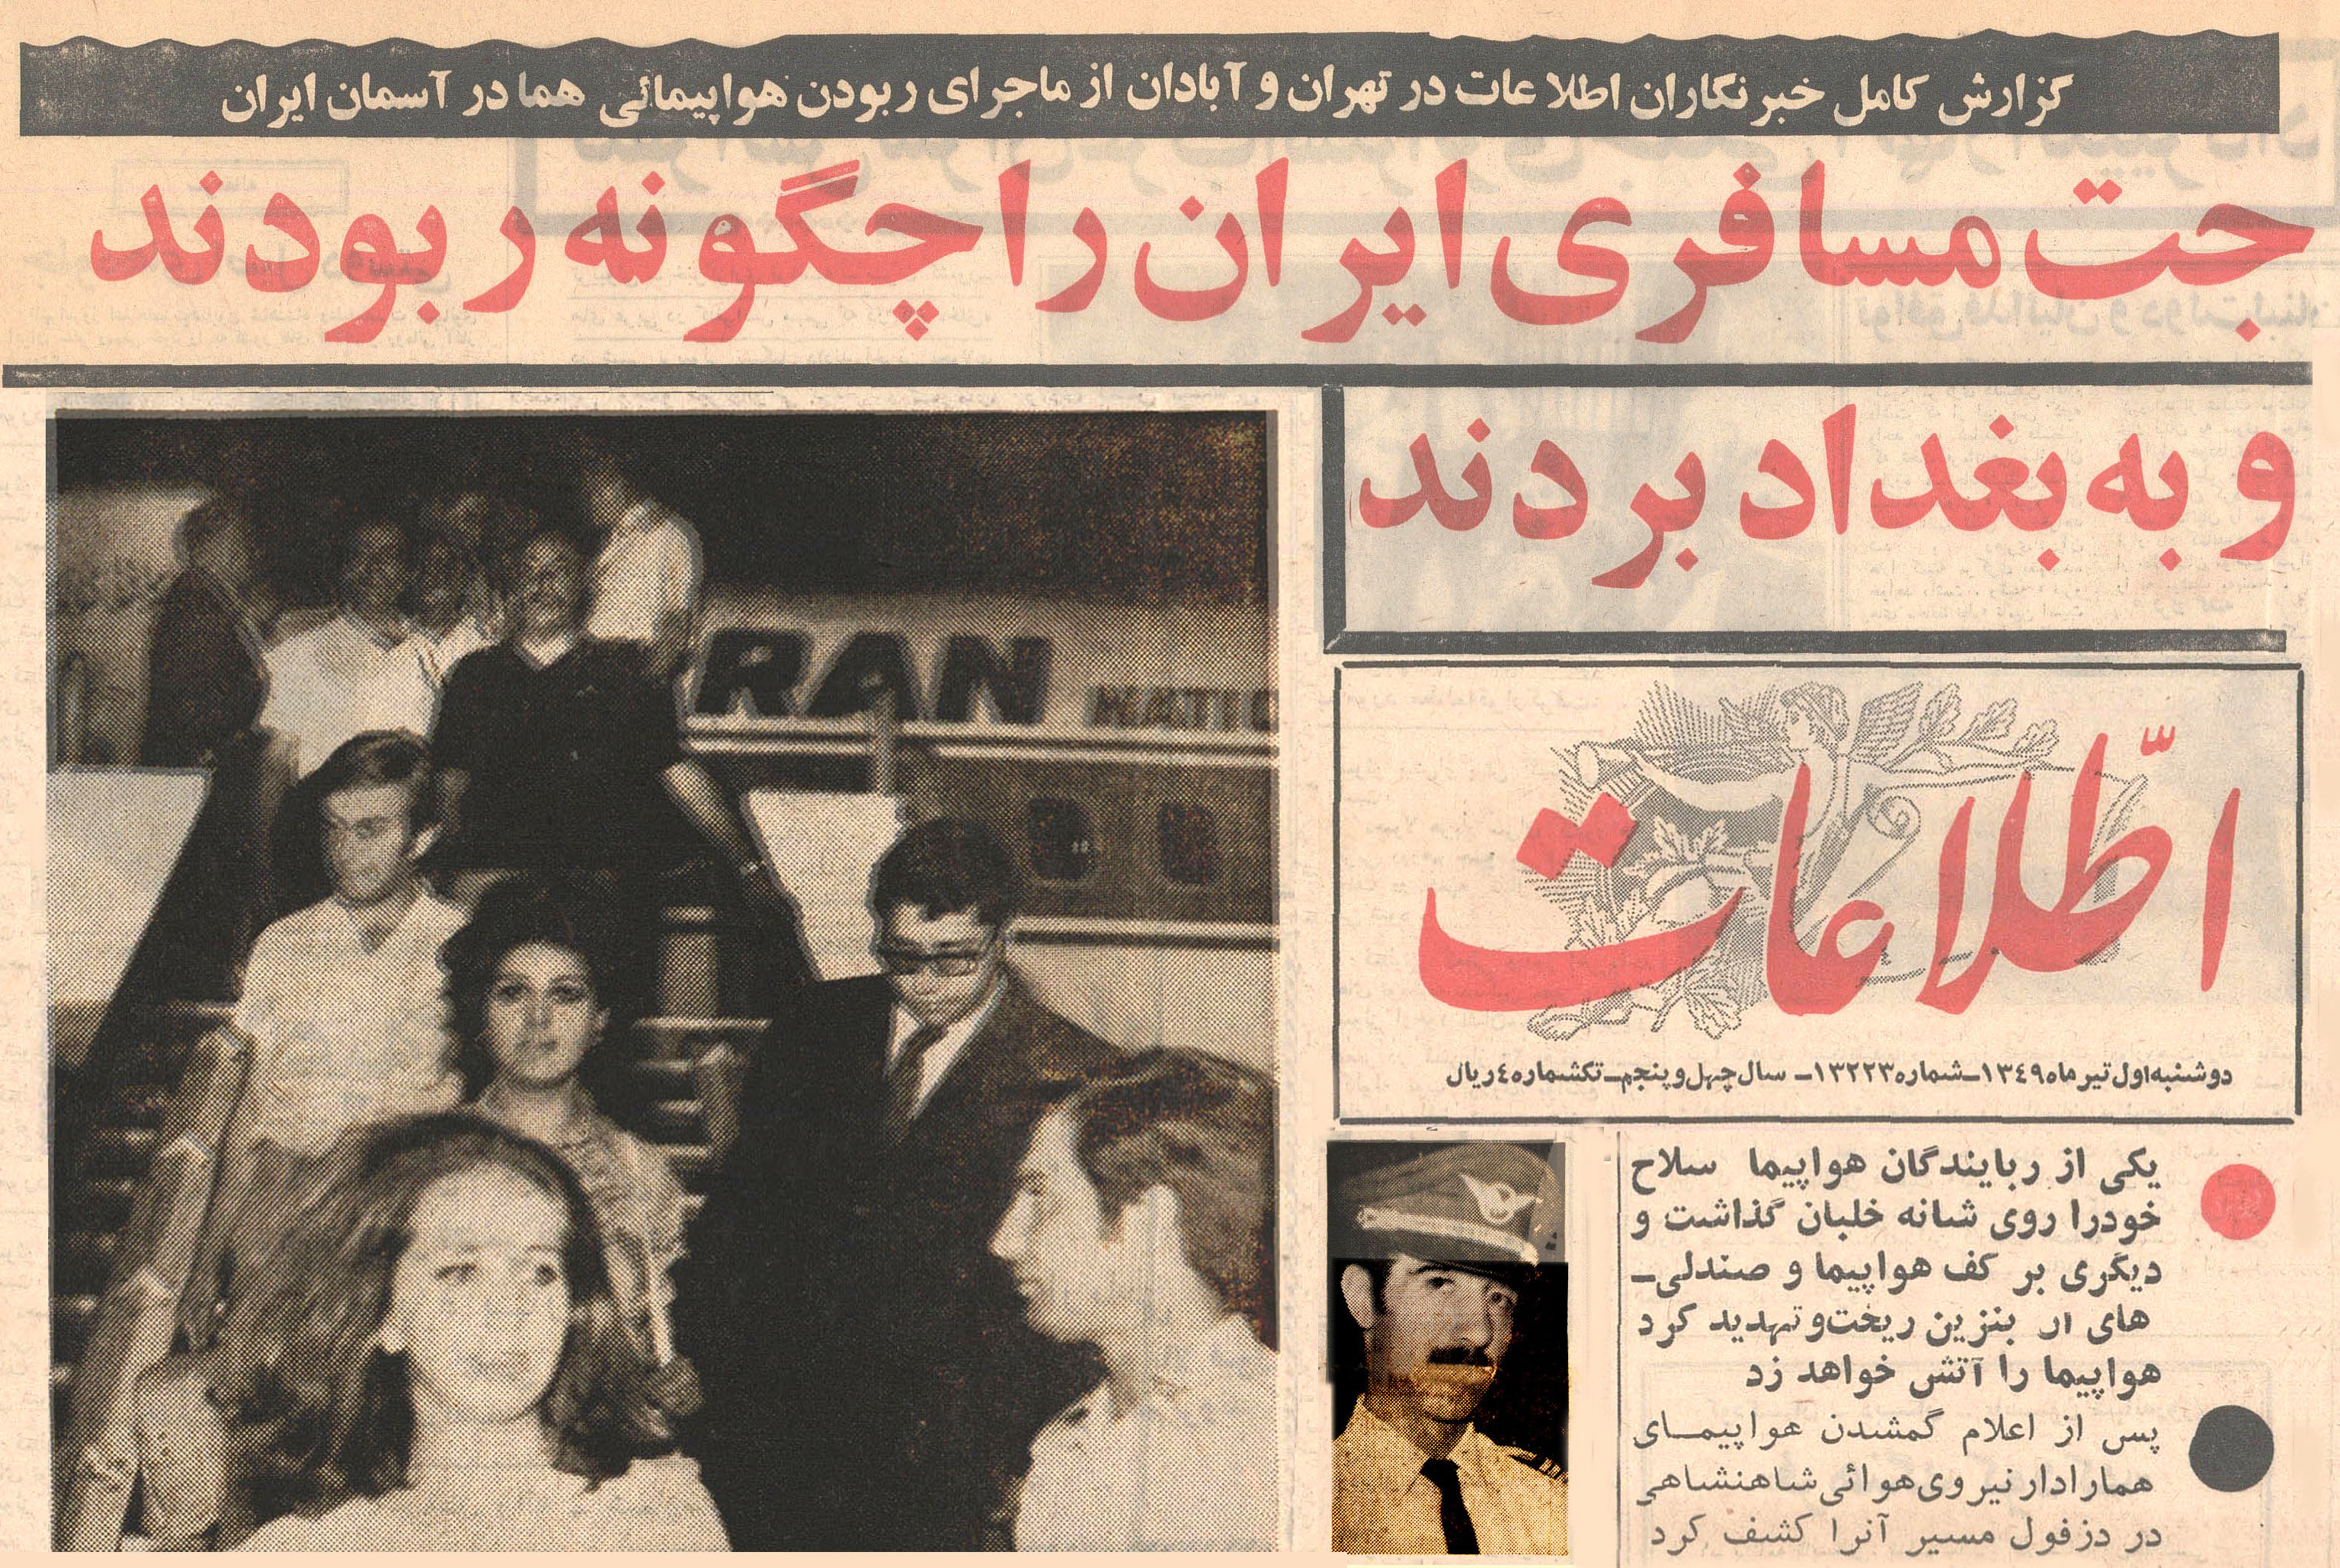 نخستین هواپیماربایی در تاریخ ایران